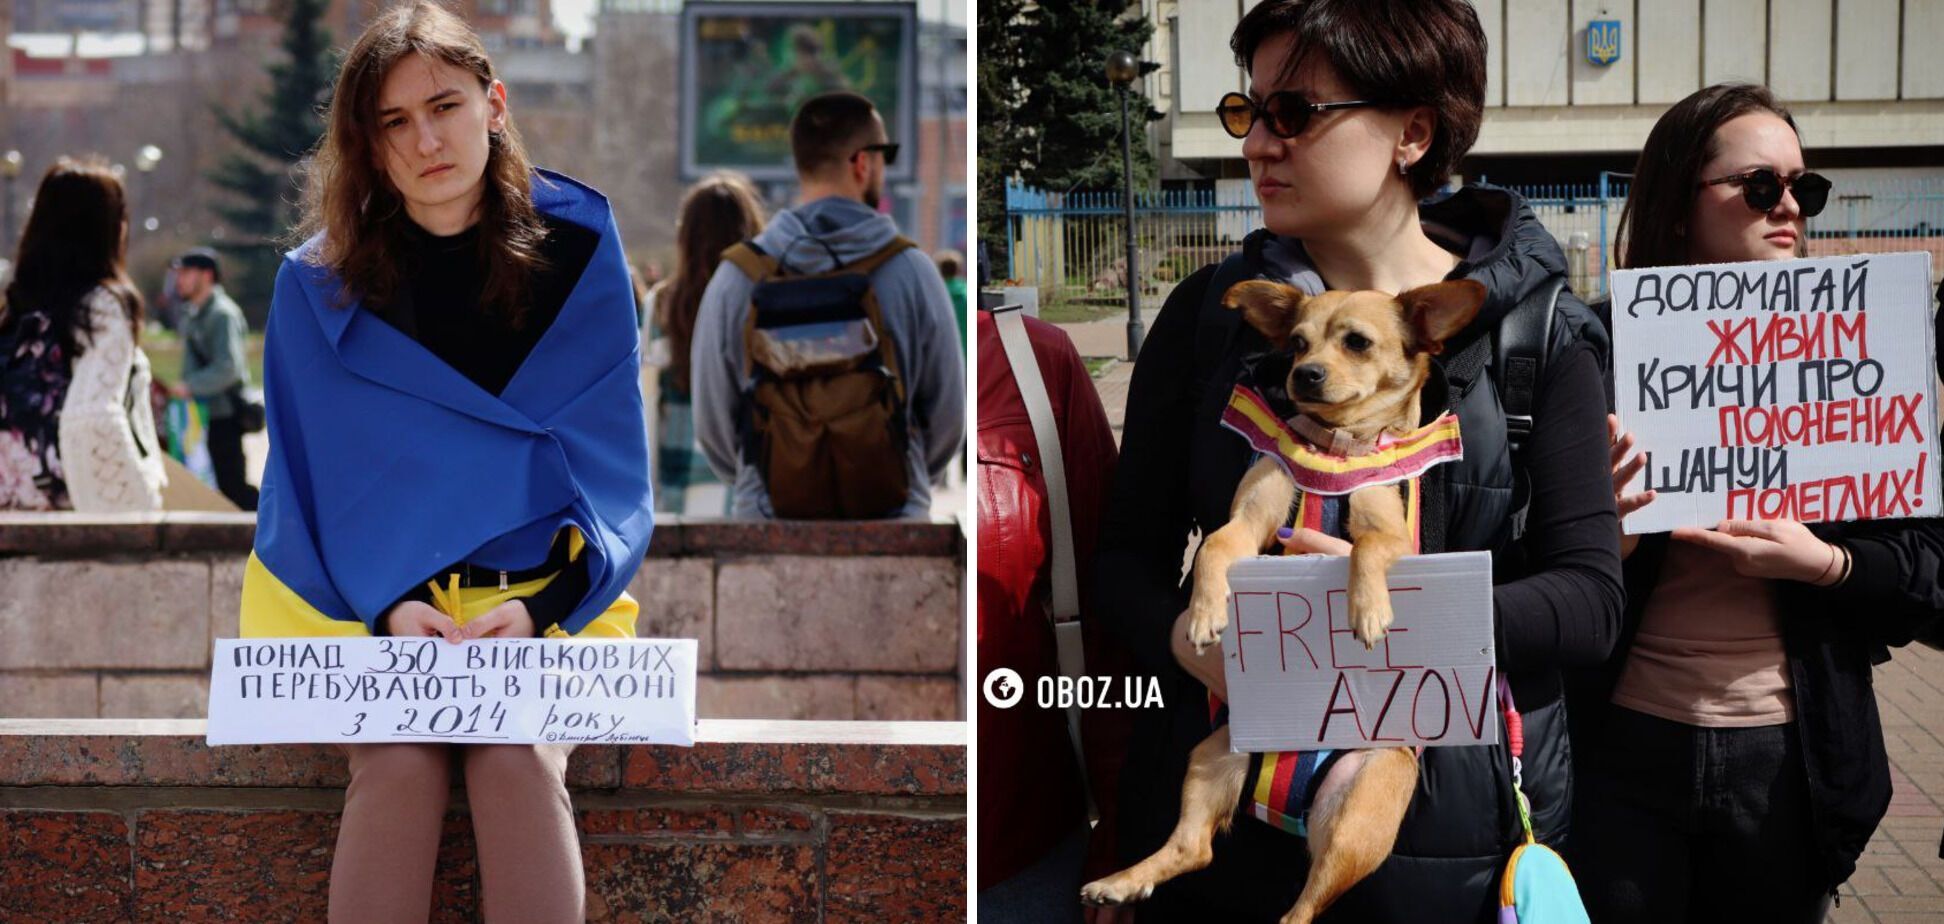 'В них одна мрія – воля': в Києві родичі полонених закликали домогтися звільнення захисників 'Азовсталі'. Фото та відео
